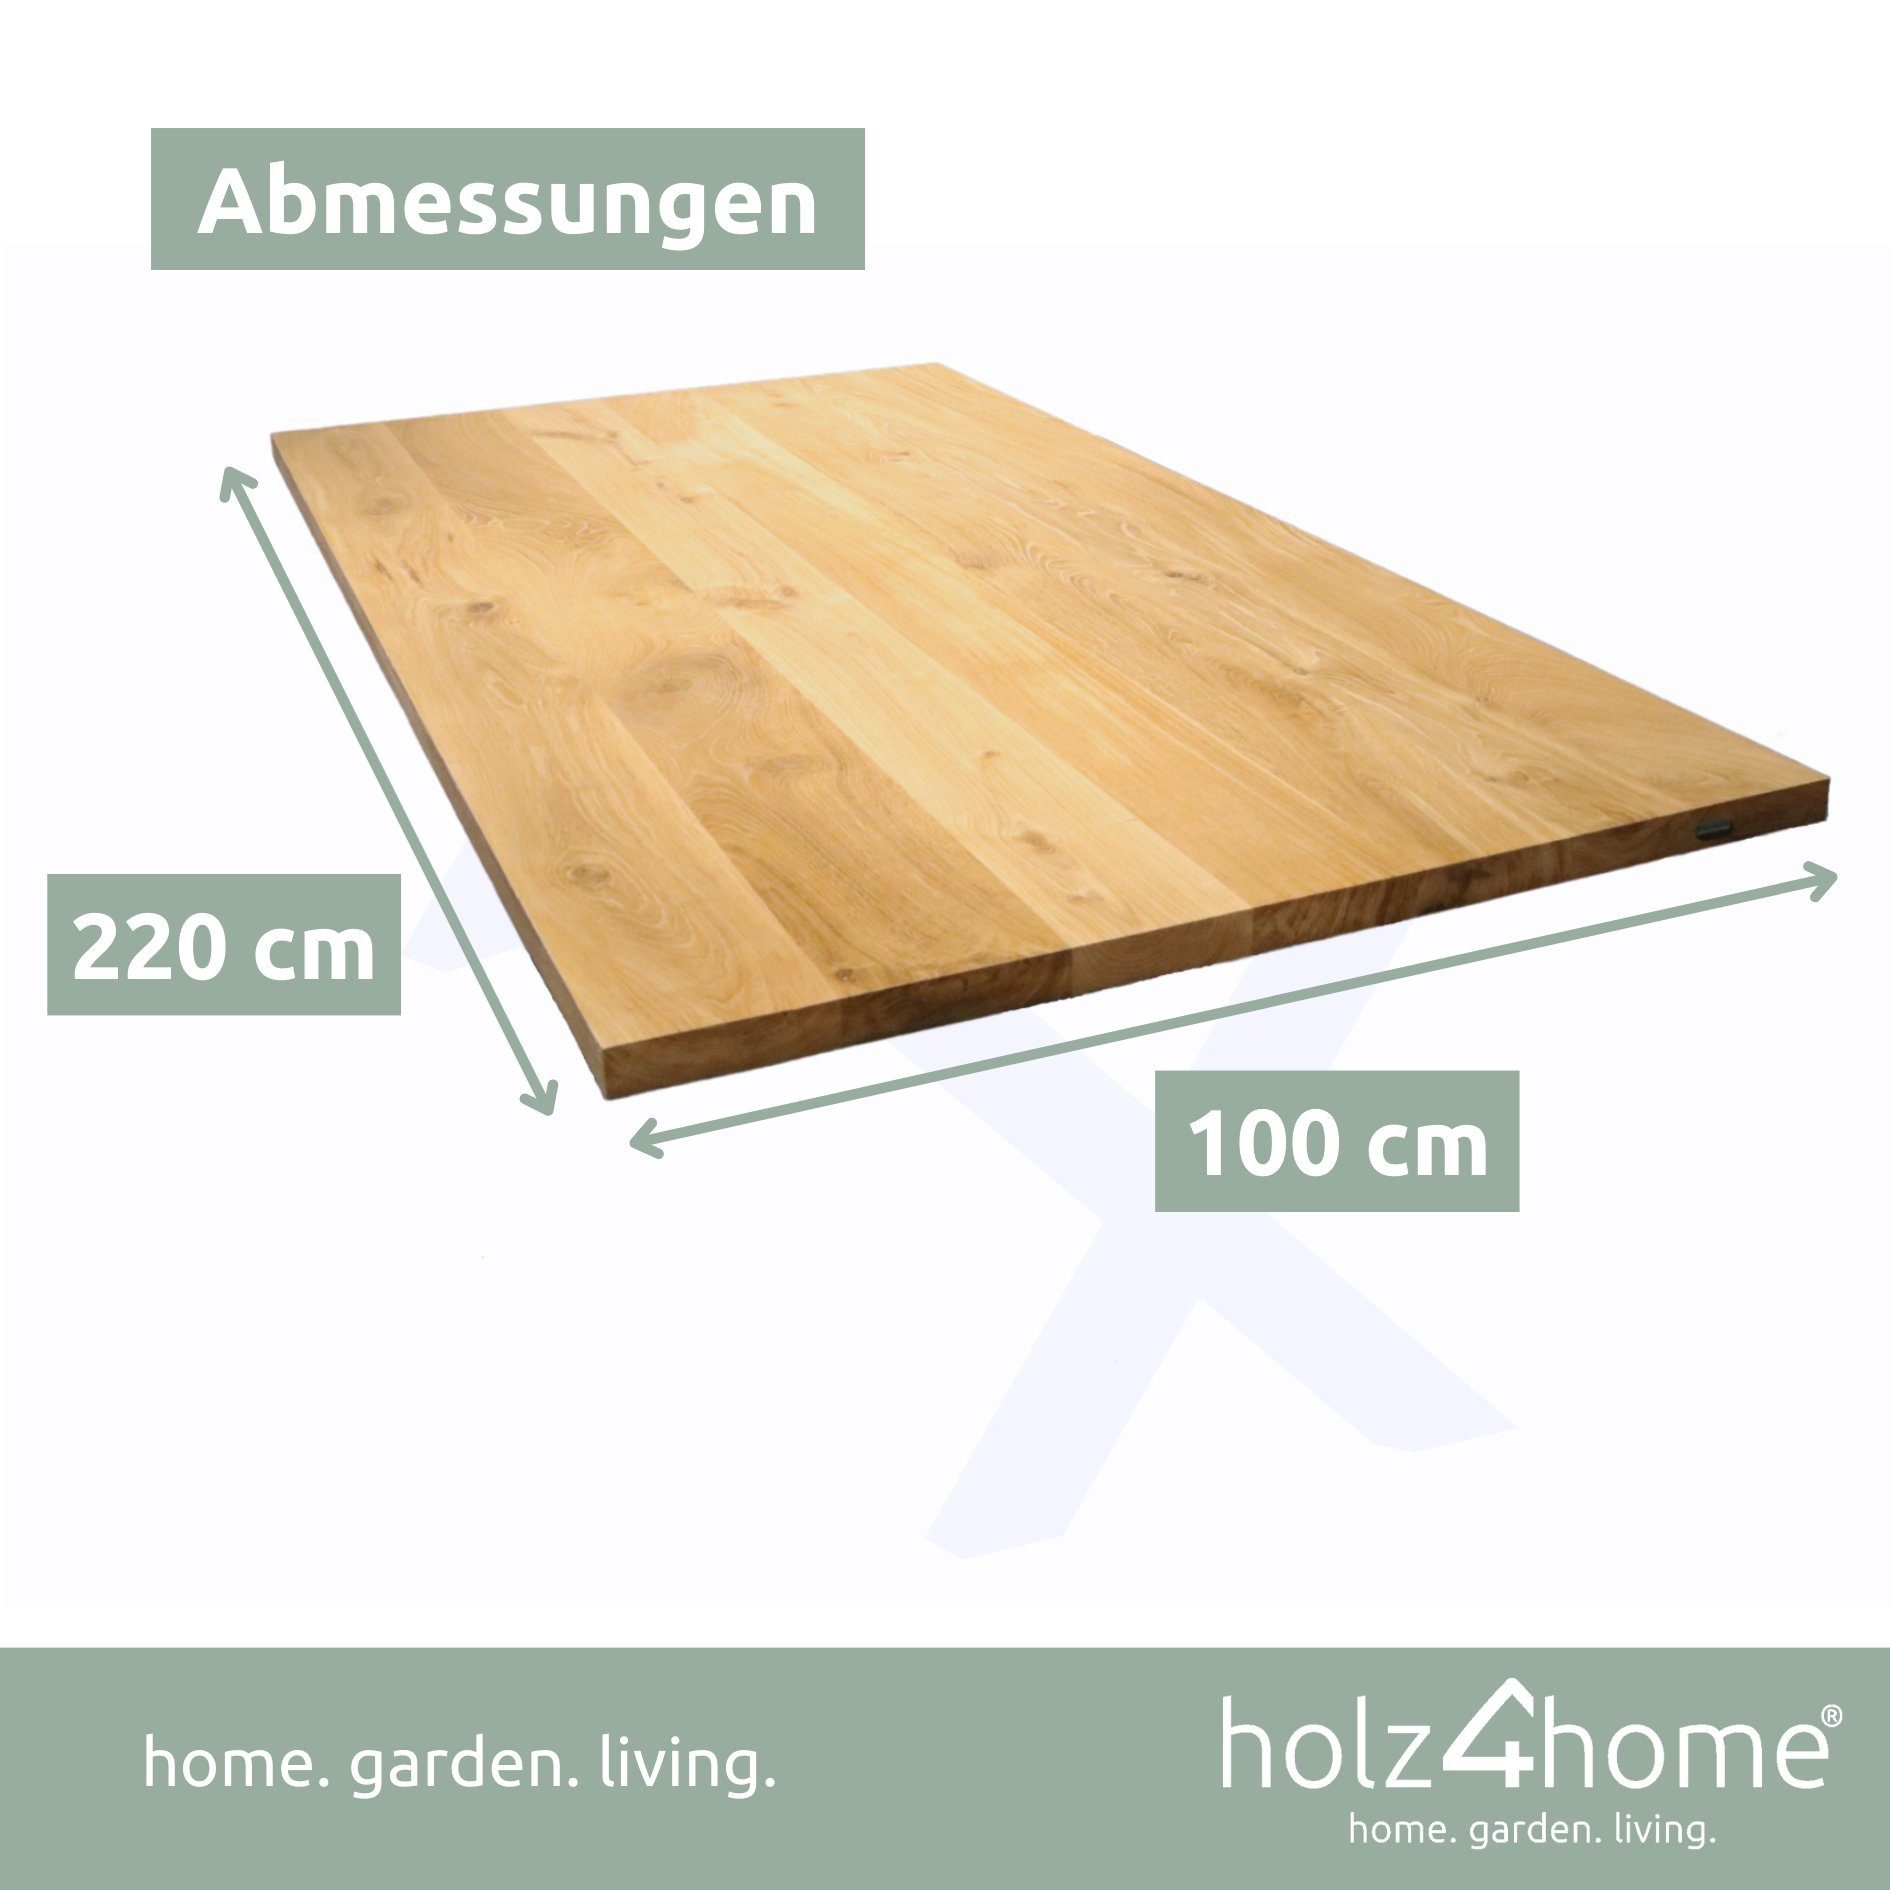 Tischplatte 220x100x4cm Eiche, Esstischplatte Esstischplatte LxBxH, holz4home Echtholz